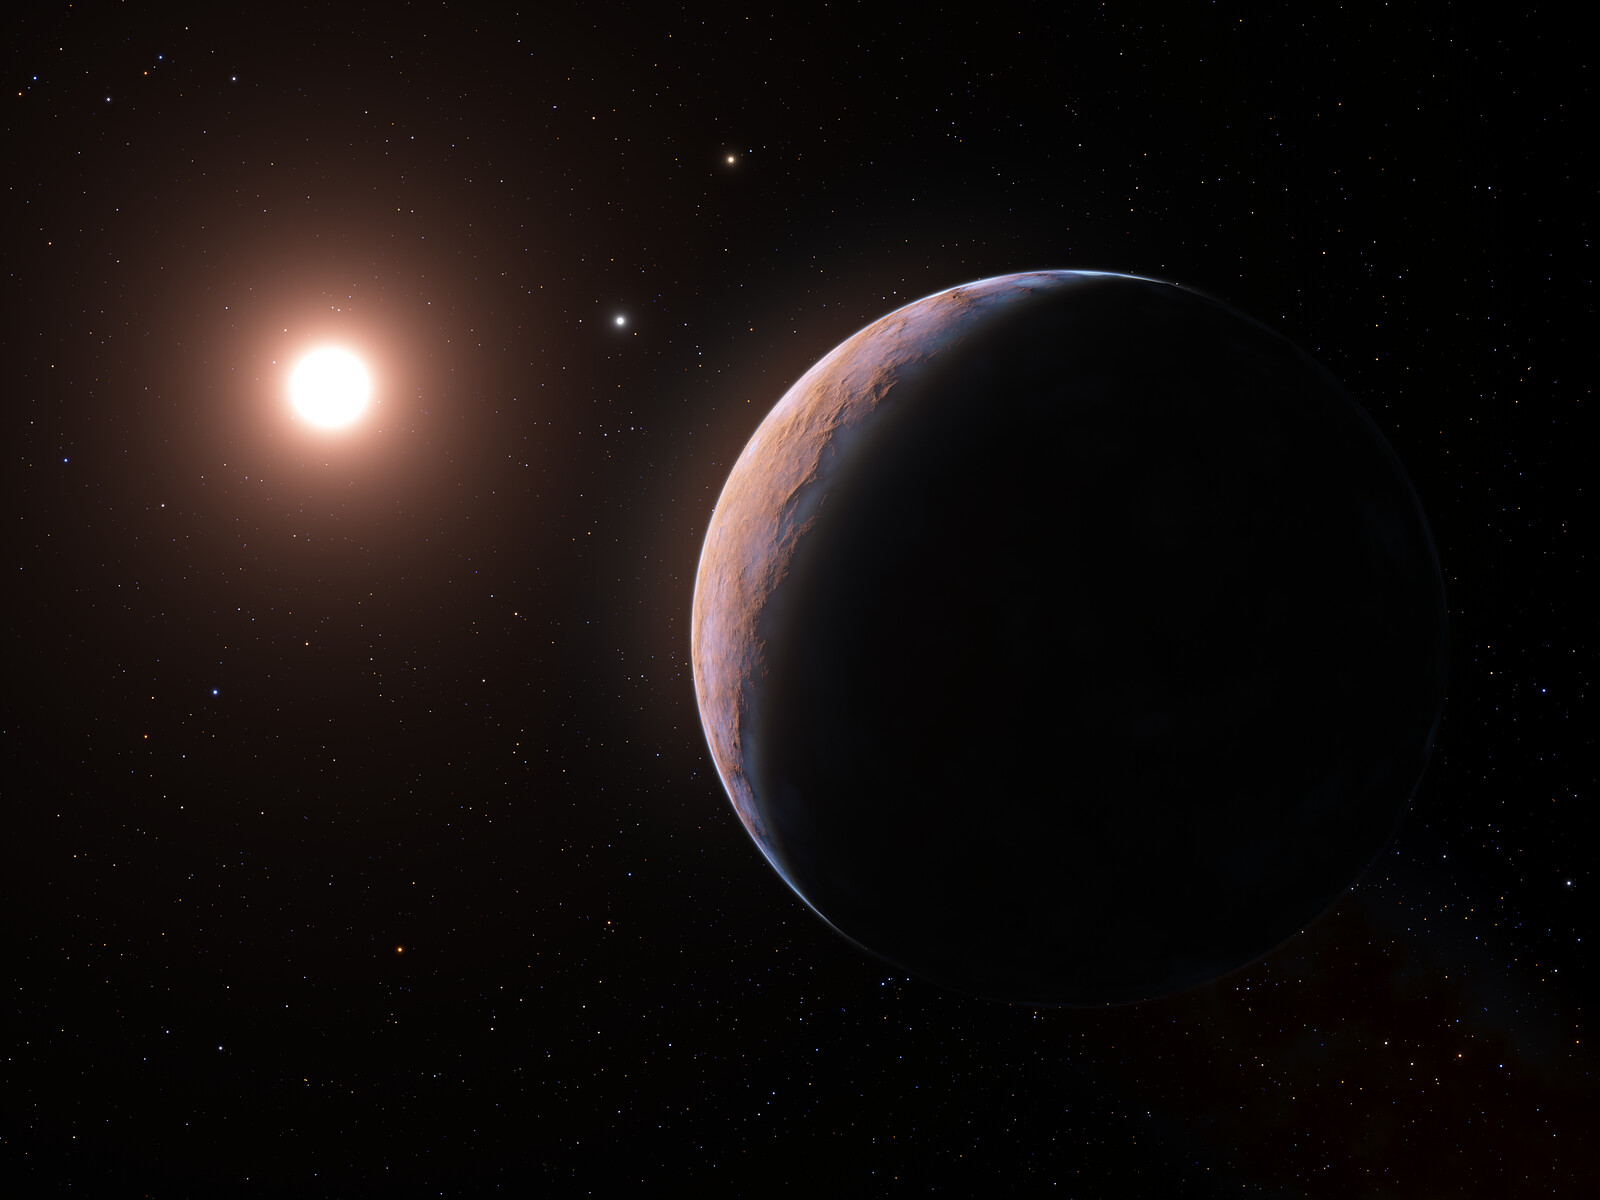 Próxima d: el nuevo planeta descubierto orbitando la estrella más cercana al Sol